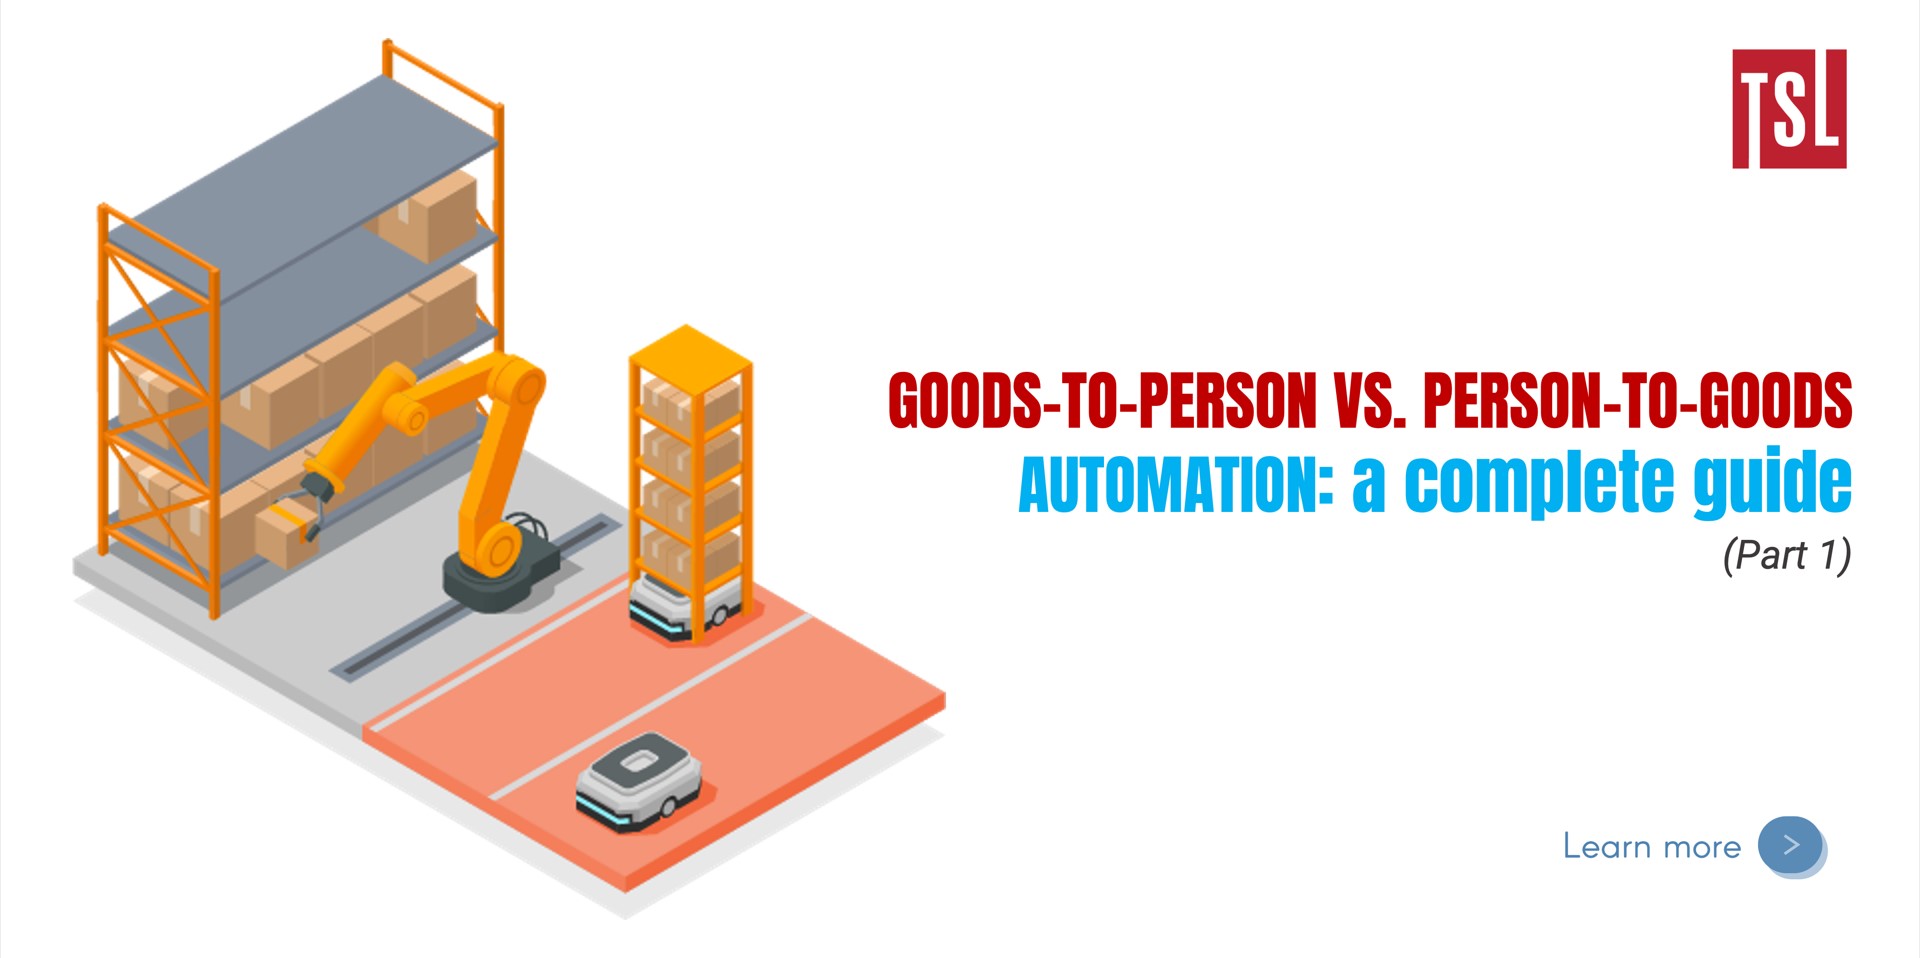 Sổ tay phương pháp tự động hóa lấy hàng: Goods-to-Person (chuyển hàng đến người) vs. Person-to-Goods (Người đến lấy hàng) (Phần 1)